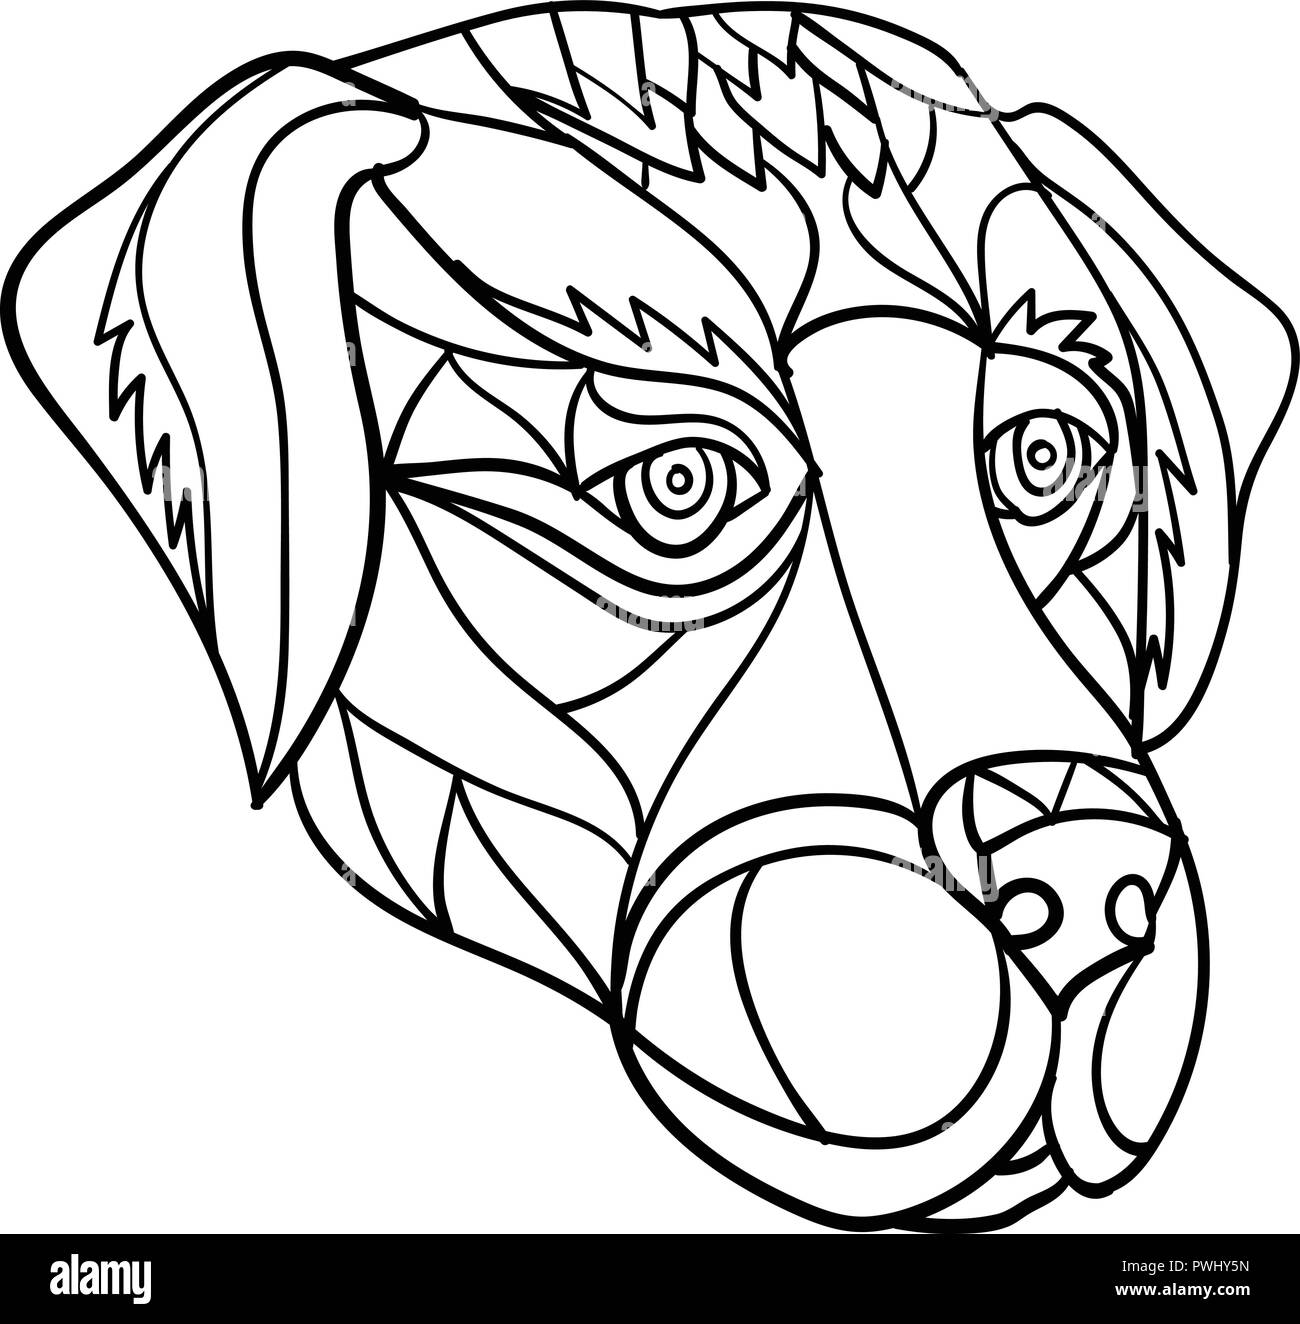 Mosaico di basso Stile del poligono illustrazione di un labrador o golden retriever testa di cane guardando al lato isolato su sfondo bianco in bianco e nero. Illustrazione Vettoriale